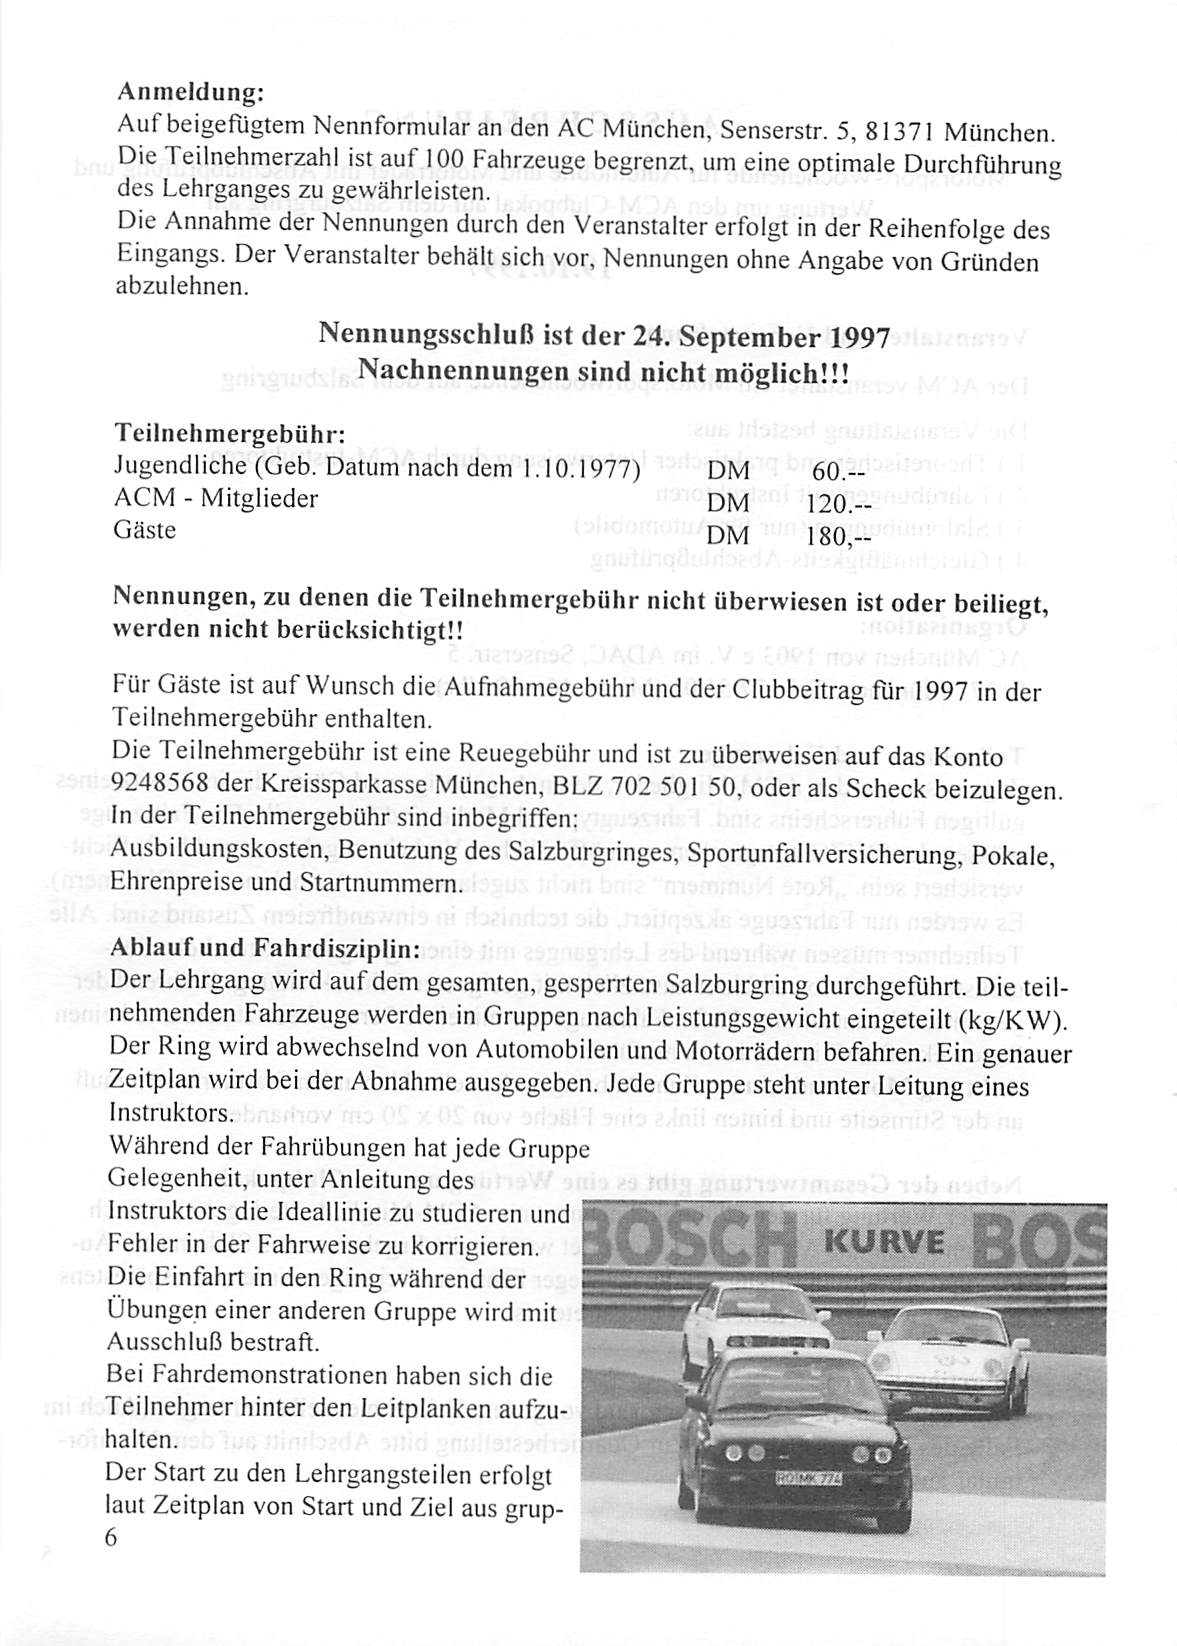 Anmeldung: Auf beigefügtem Nennformular an den AC München, Senserstr. 5, 81371 München.